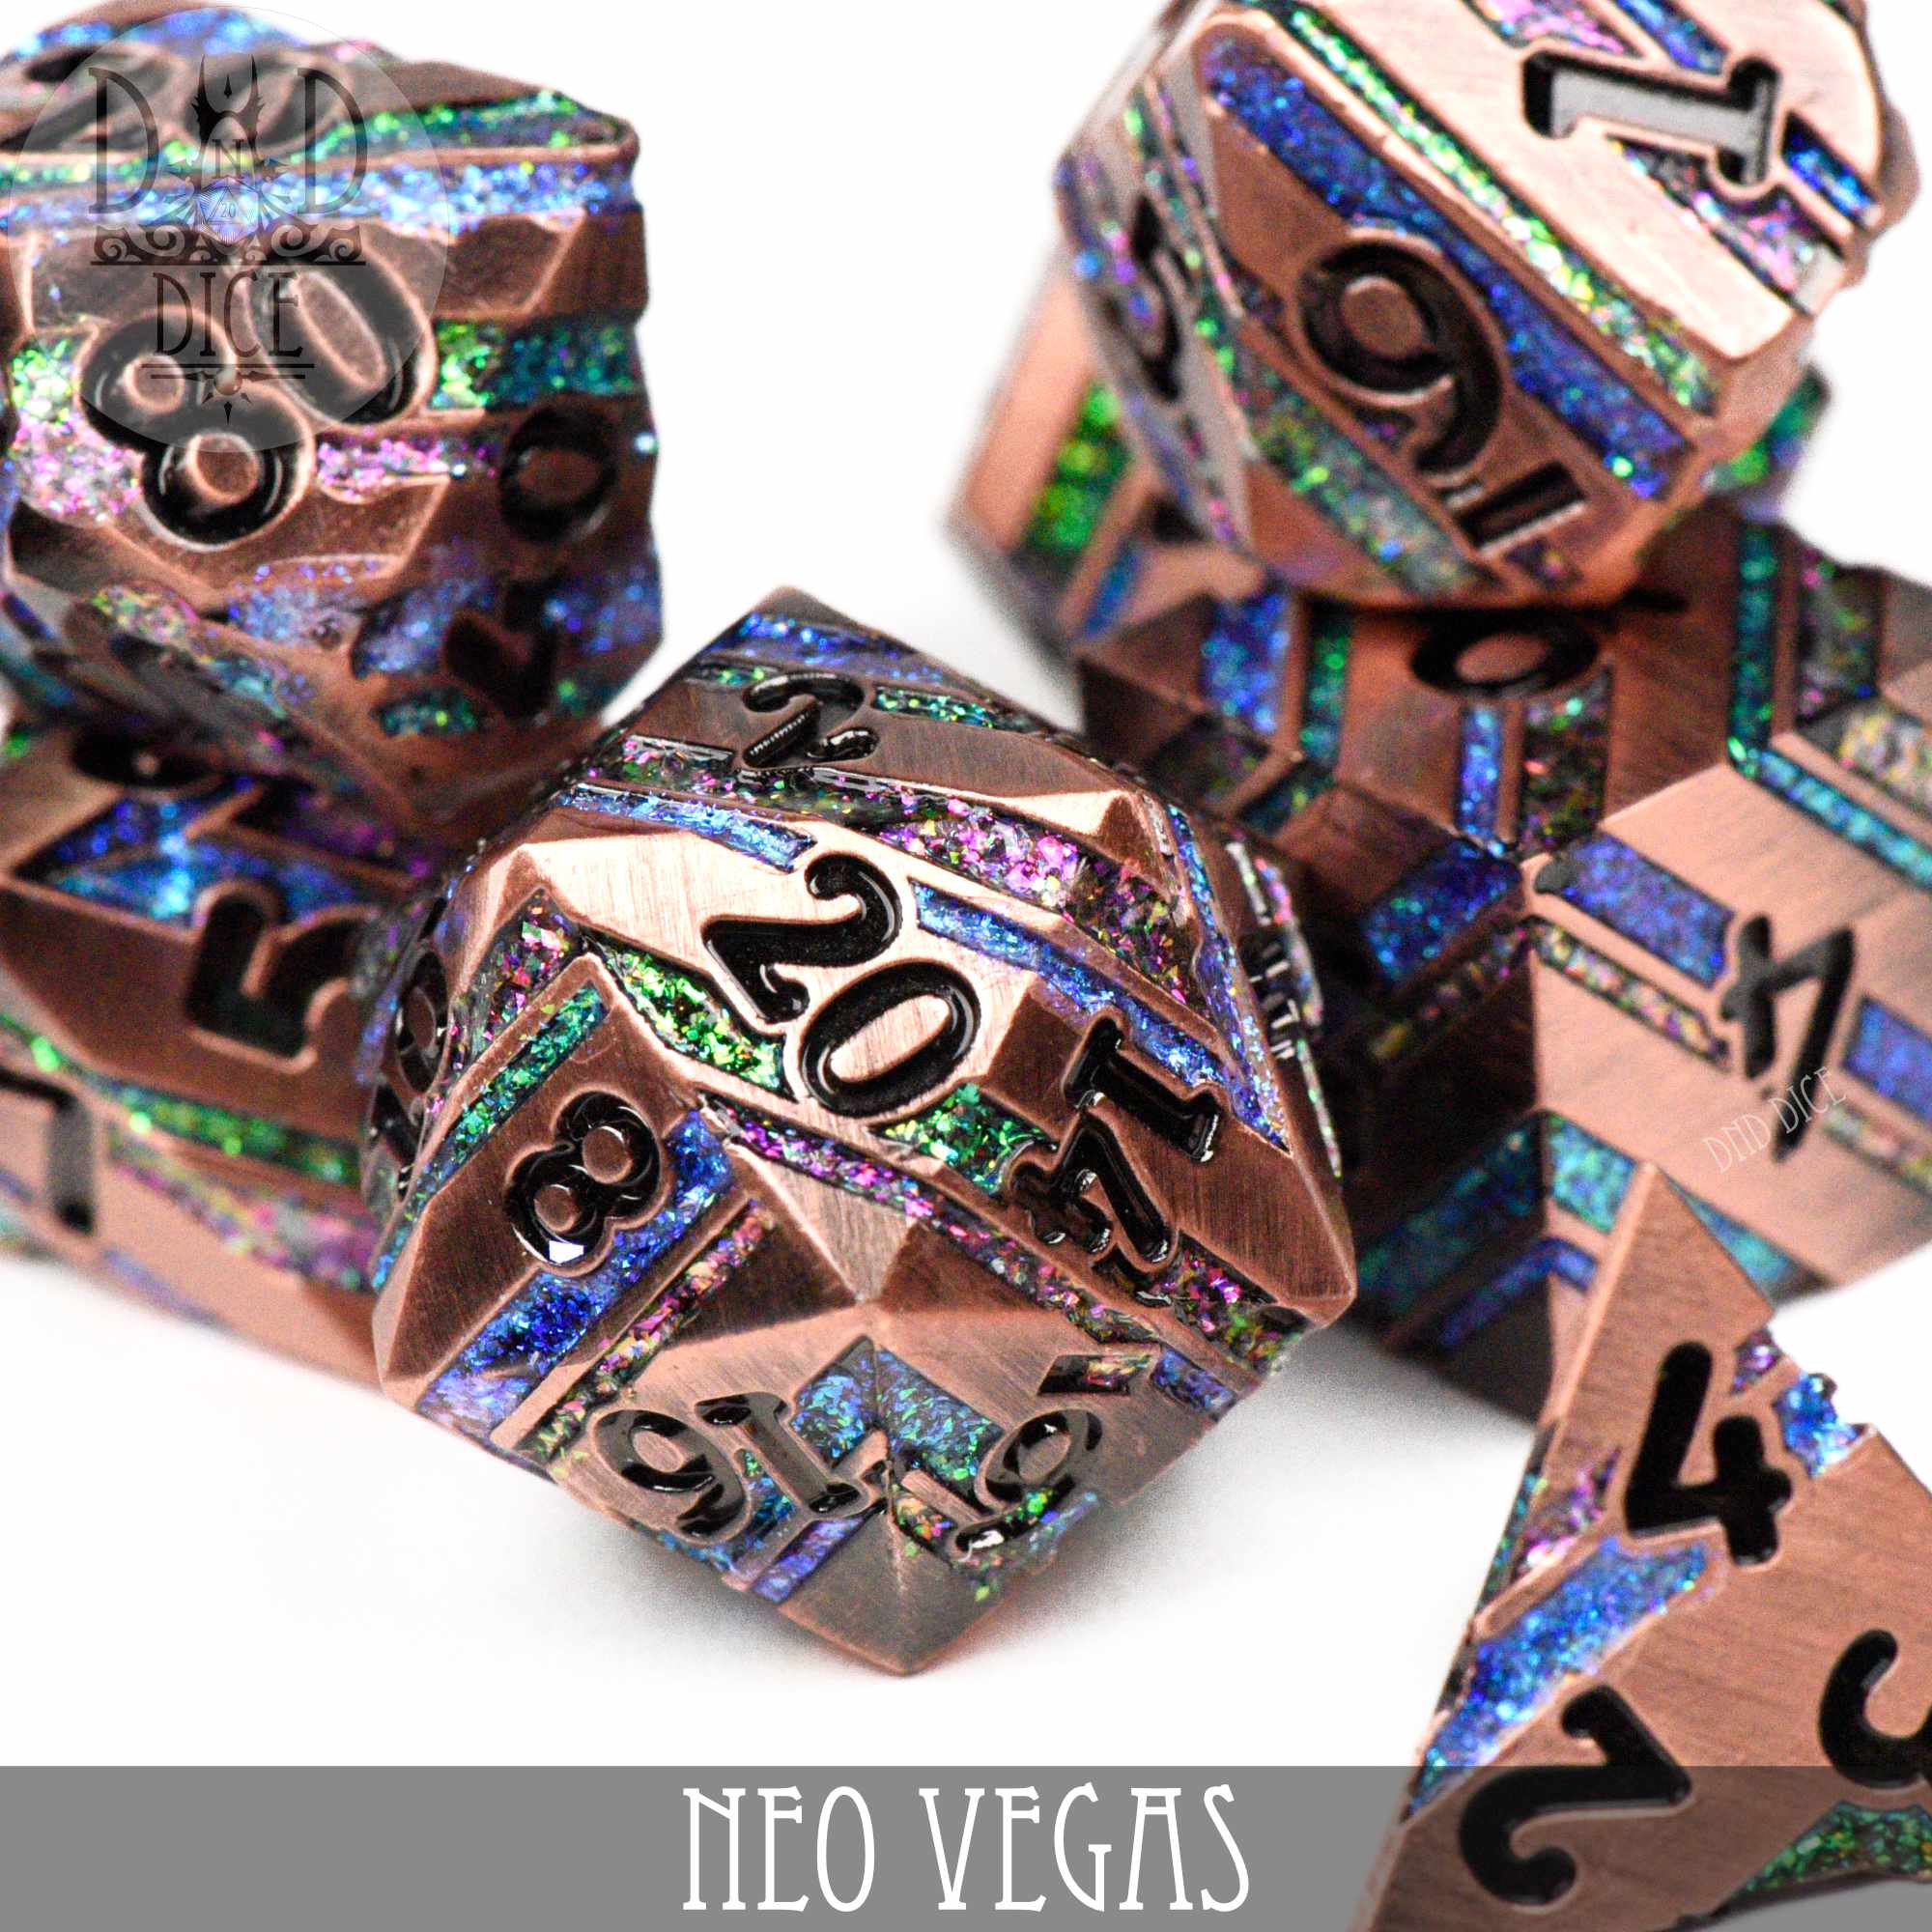 Neo Vegas Metal Dice Set